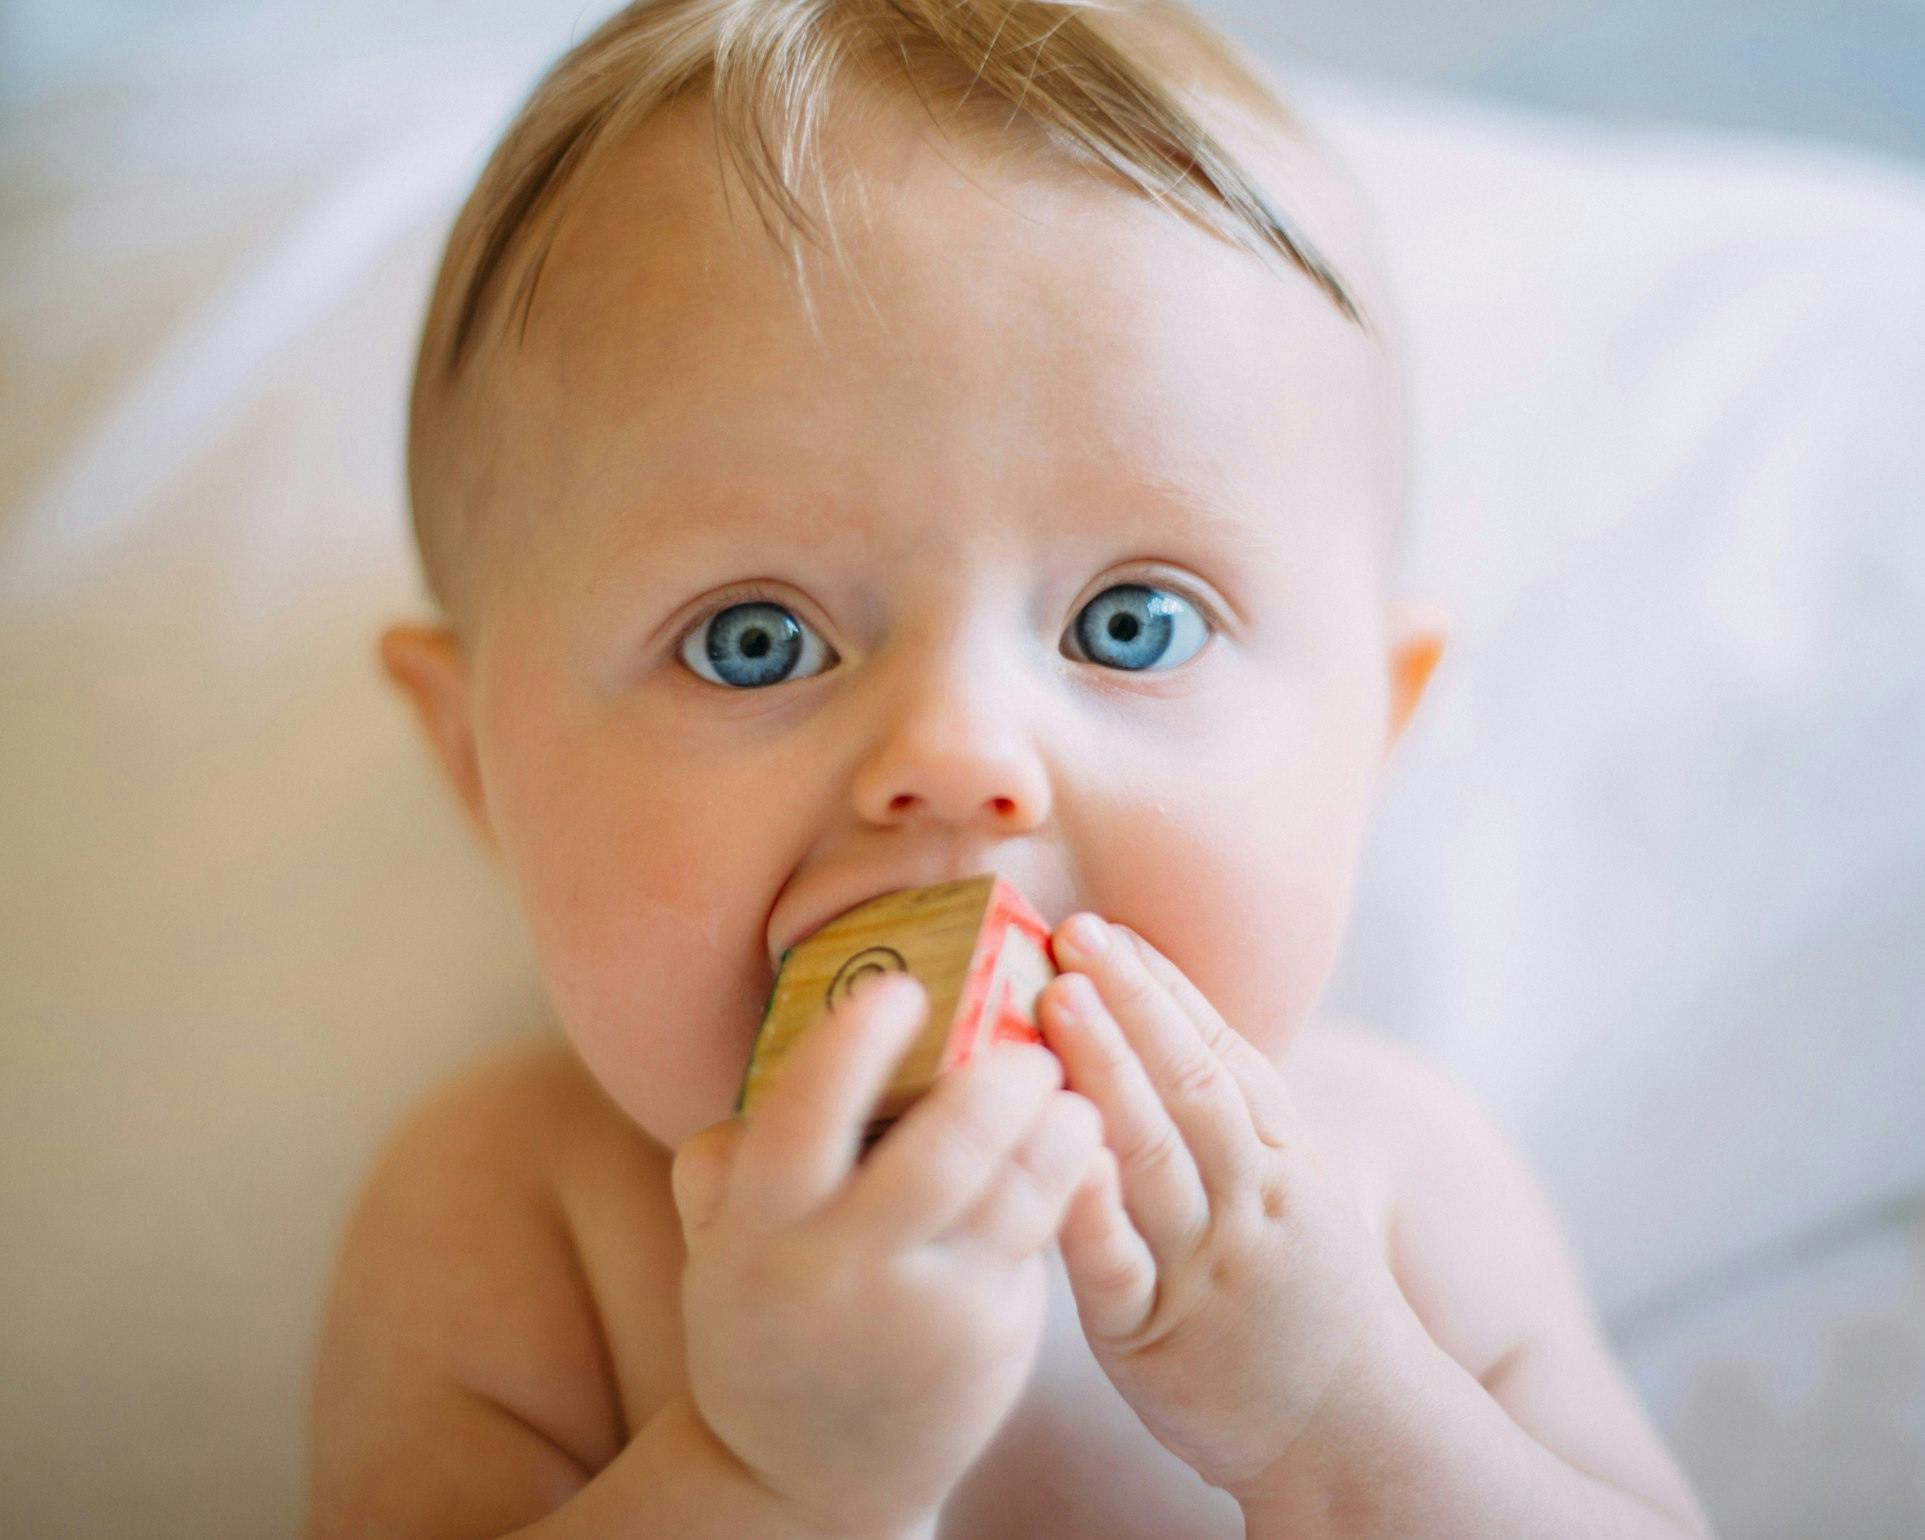 Un bébé aux yeux bleus vifs mordille un petit bloc de bois coloré. Ses cheveux blonds sont très courts et il semble curieux ou concentré.